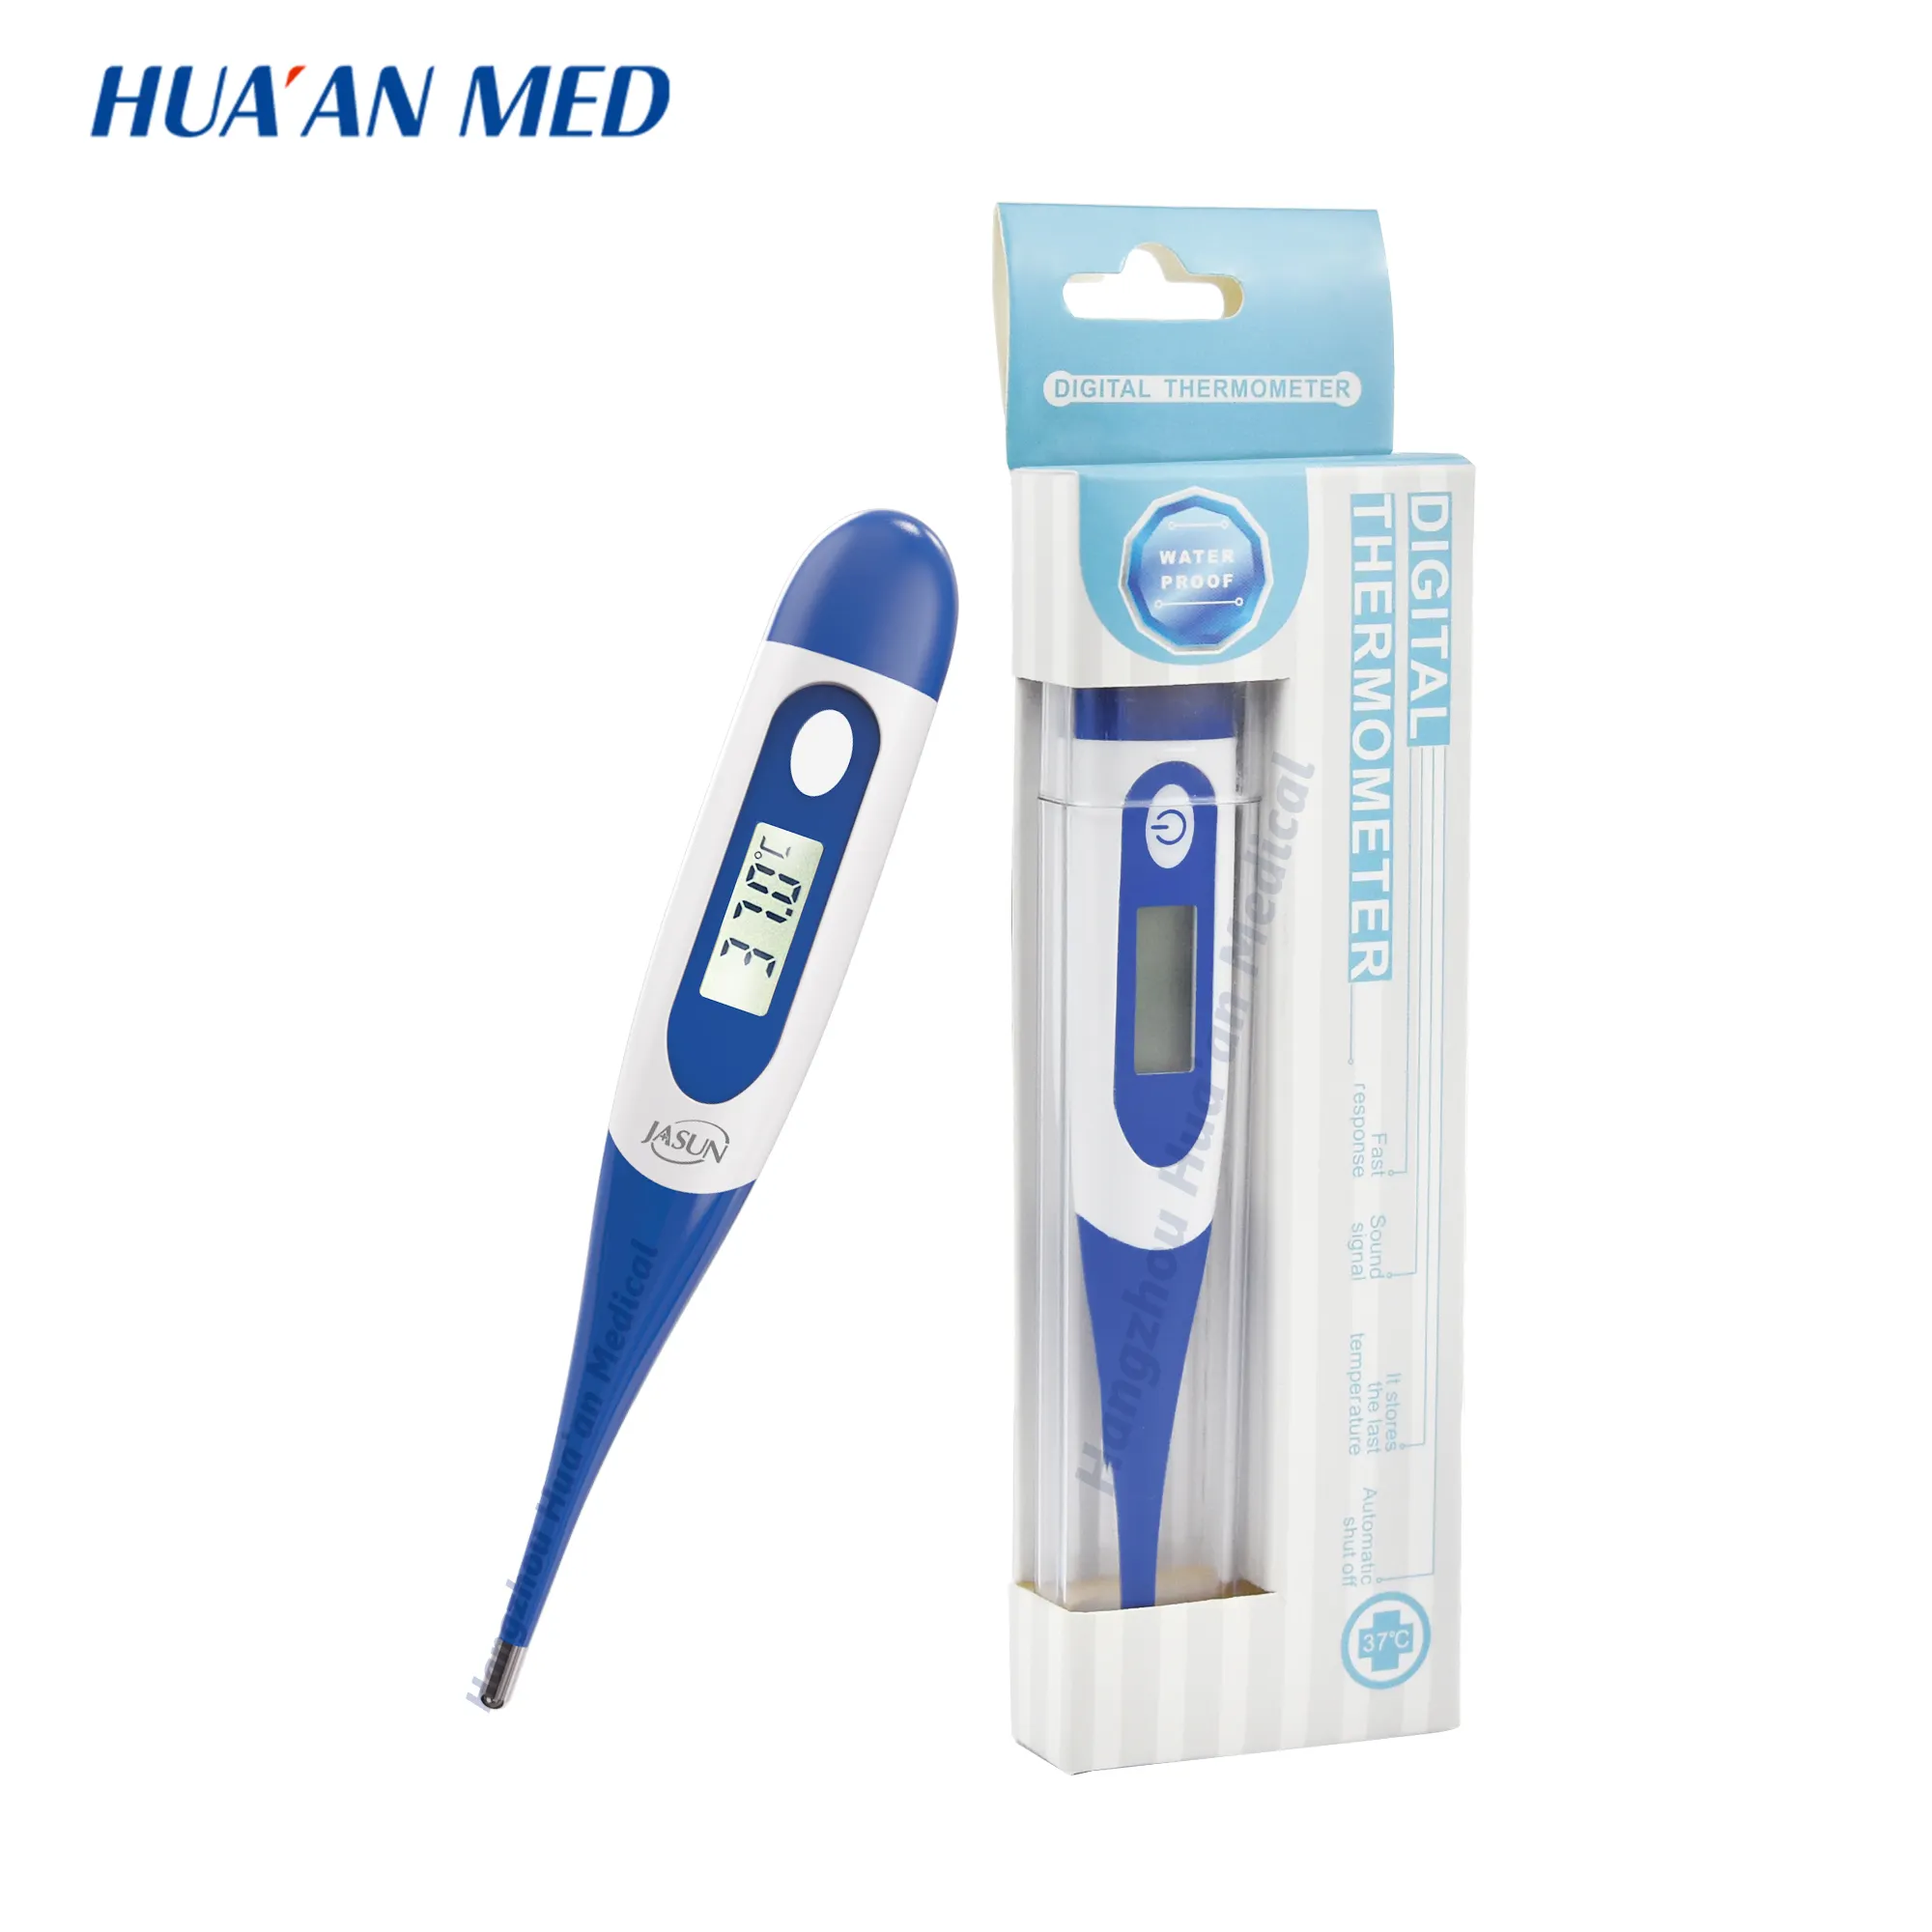 Huaan Betere Kwaliteit dan Soortgelijke Items 30 Seconden Flexibele Tip Digitale Medische Baby Thermometer